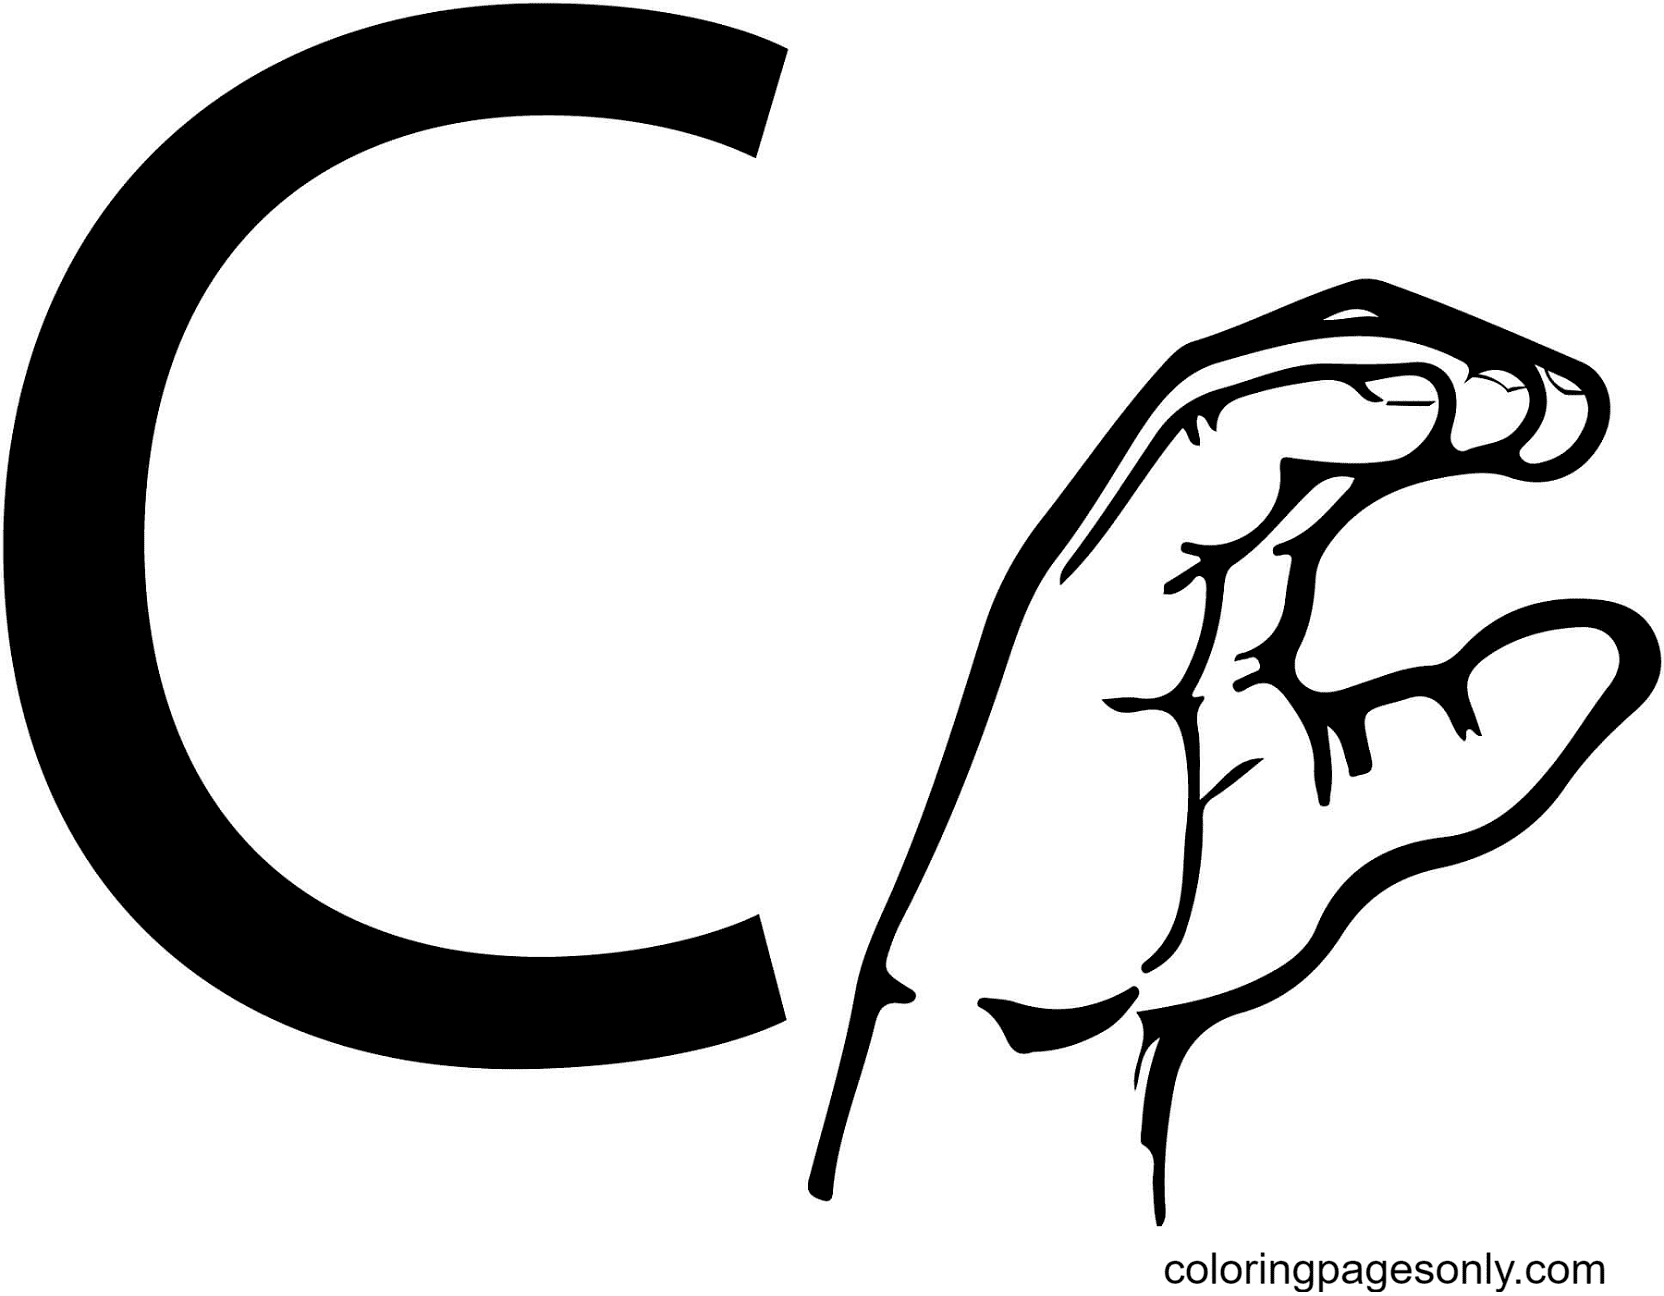 ASL Gebarentaal Letter C vanaf Letter C